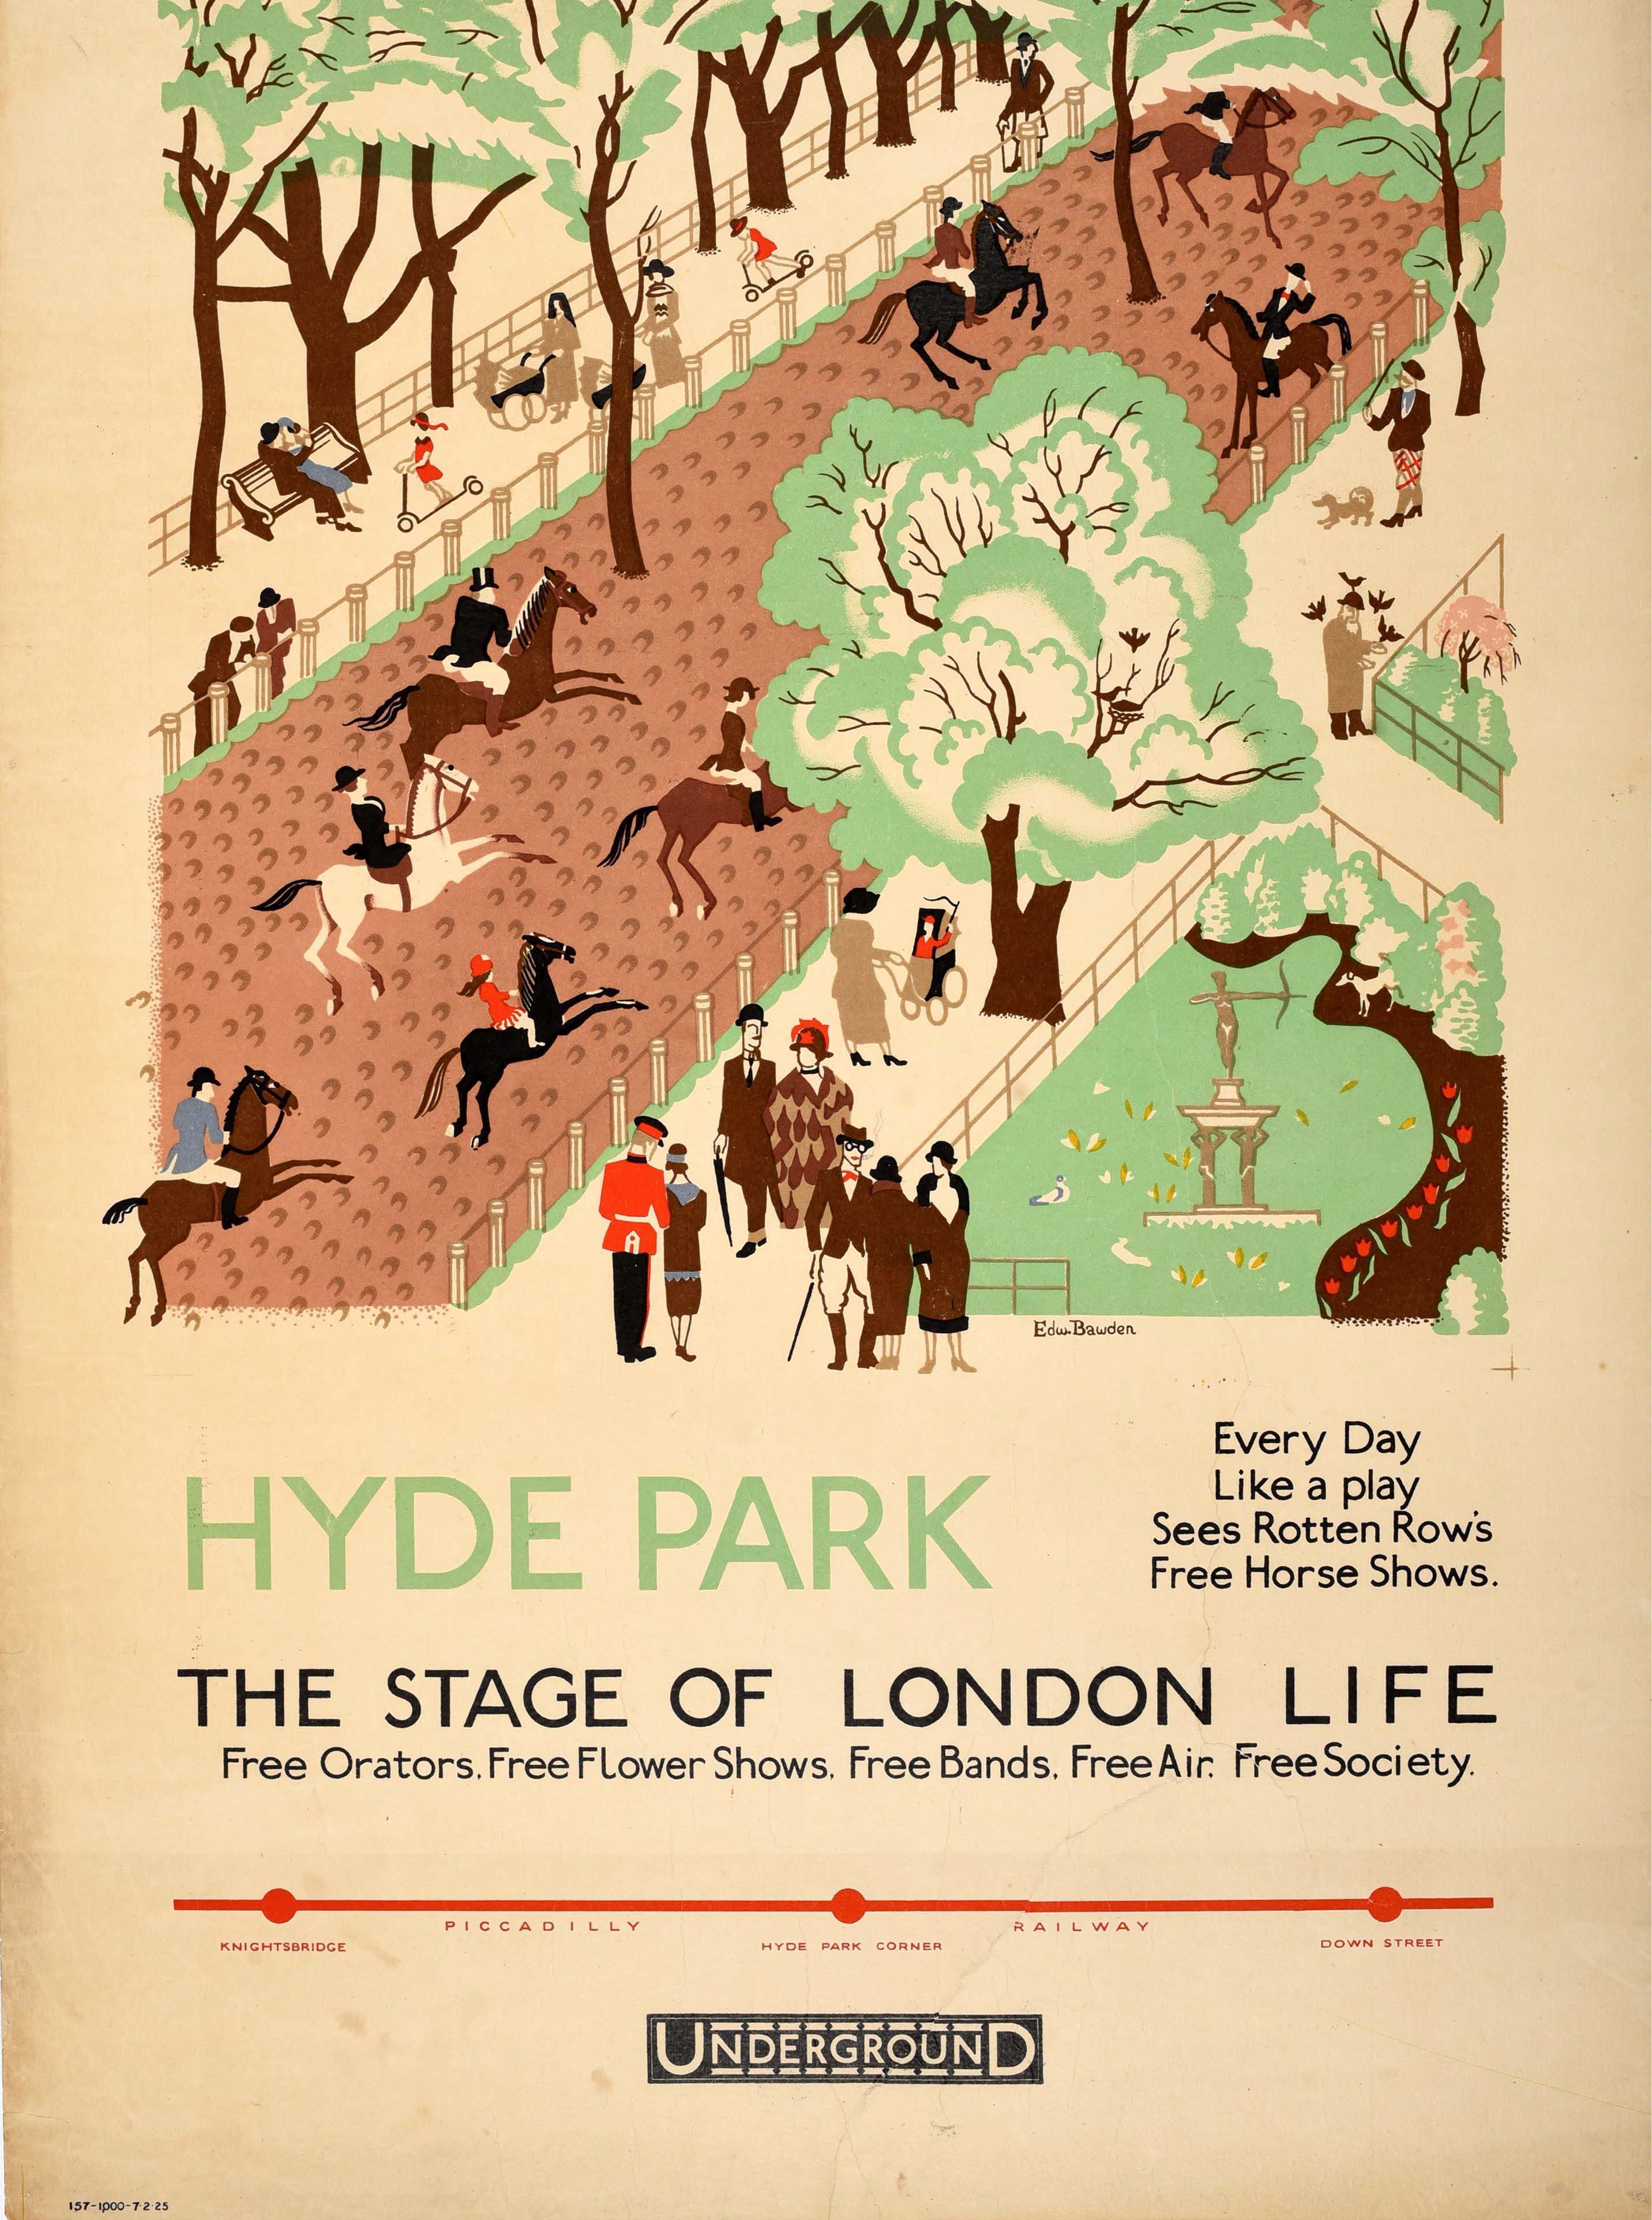 Originales antikes Londoner U-Bahn-Plakat für Hyde Park The Stage of London Life Free Orators, Free Flower Shows, Free Bands, Free Air, Free Society mit einem Werk des englischen Grafikers, Illustrators und Malers Edward Bawden (1903-1989), das eine